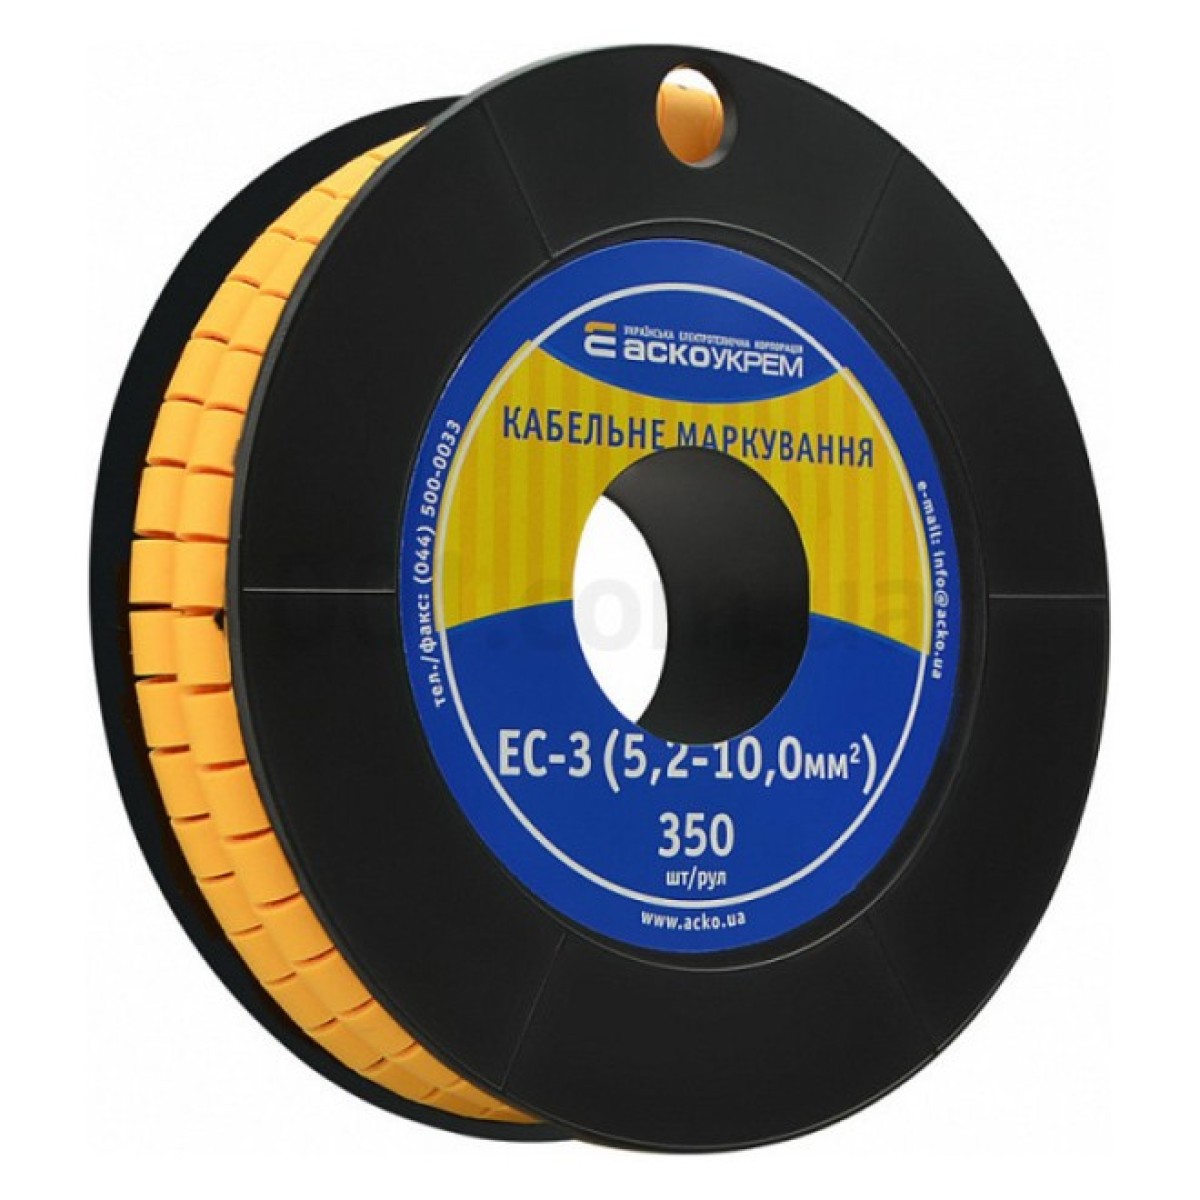 Маркування ЕС-3 для кабелю 5,2-10,0 мм² (чисте) (рулон 250 шт.), АСКО-УКРЕМ 256_256.jpg